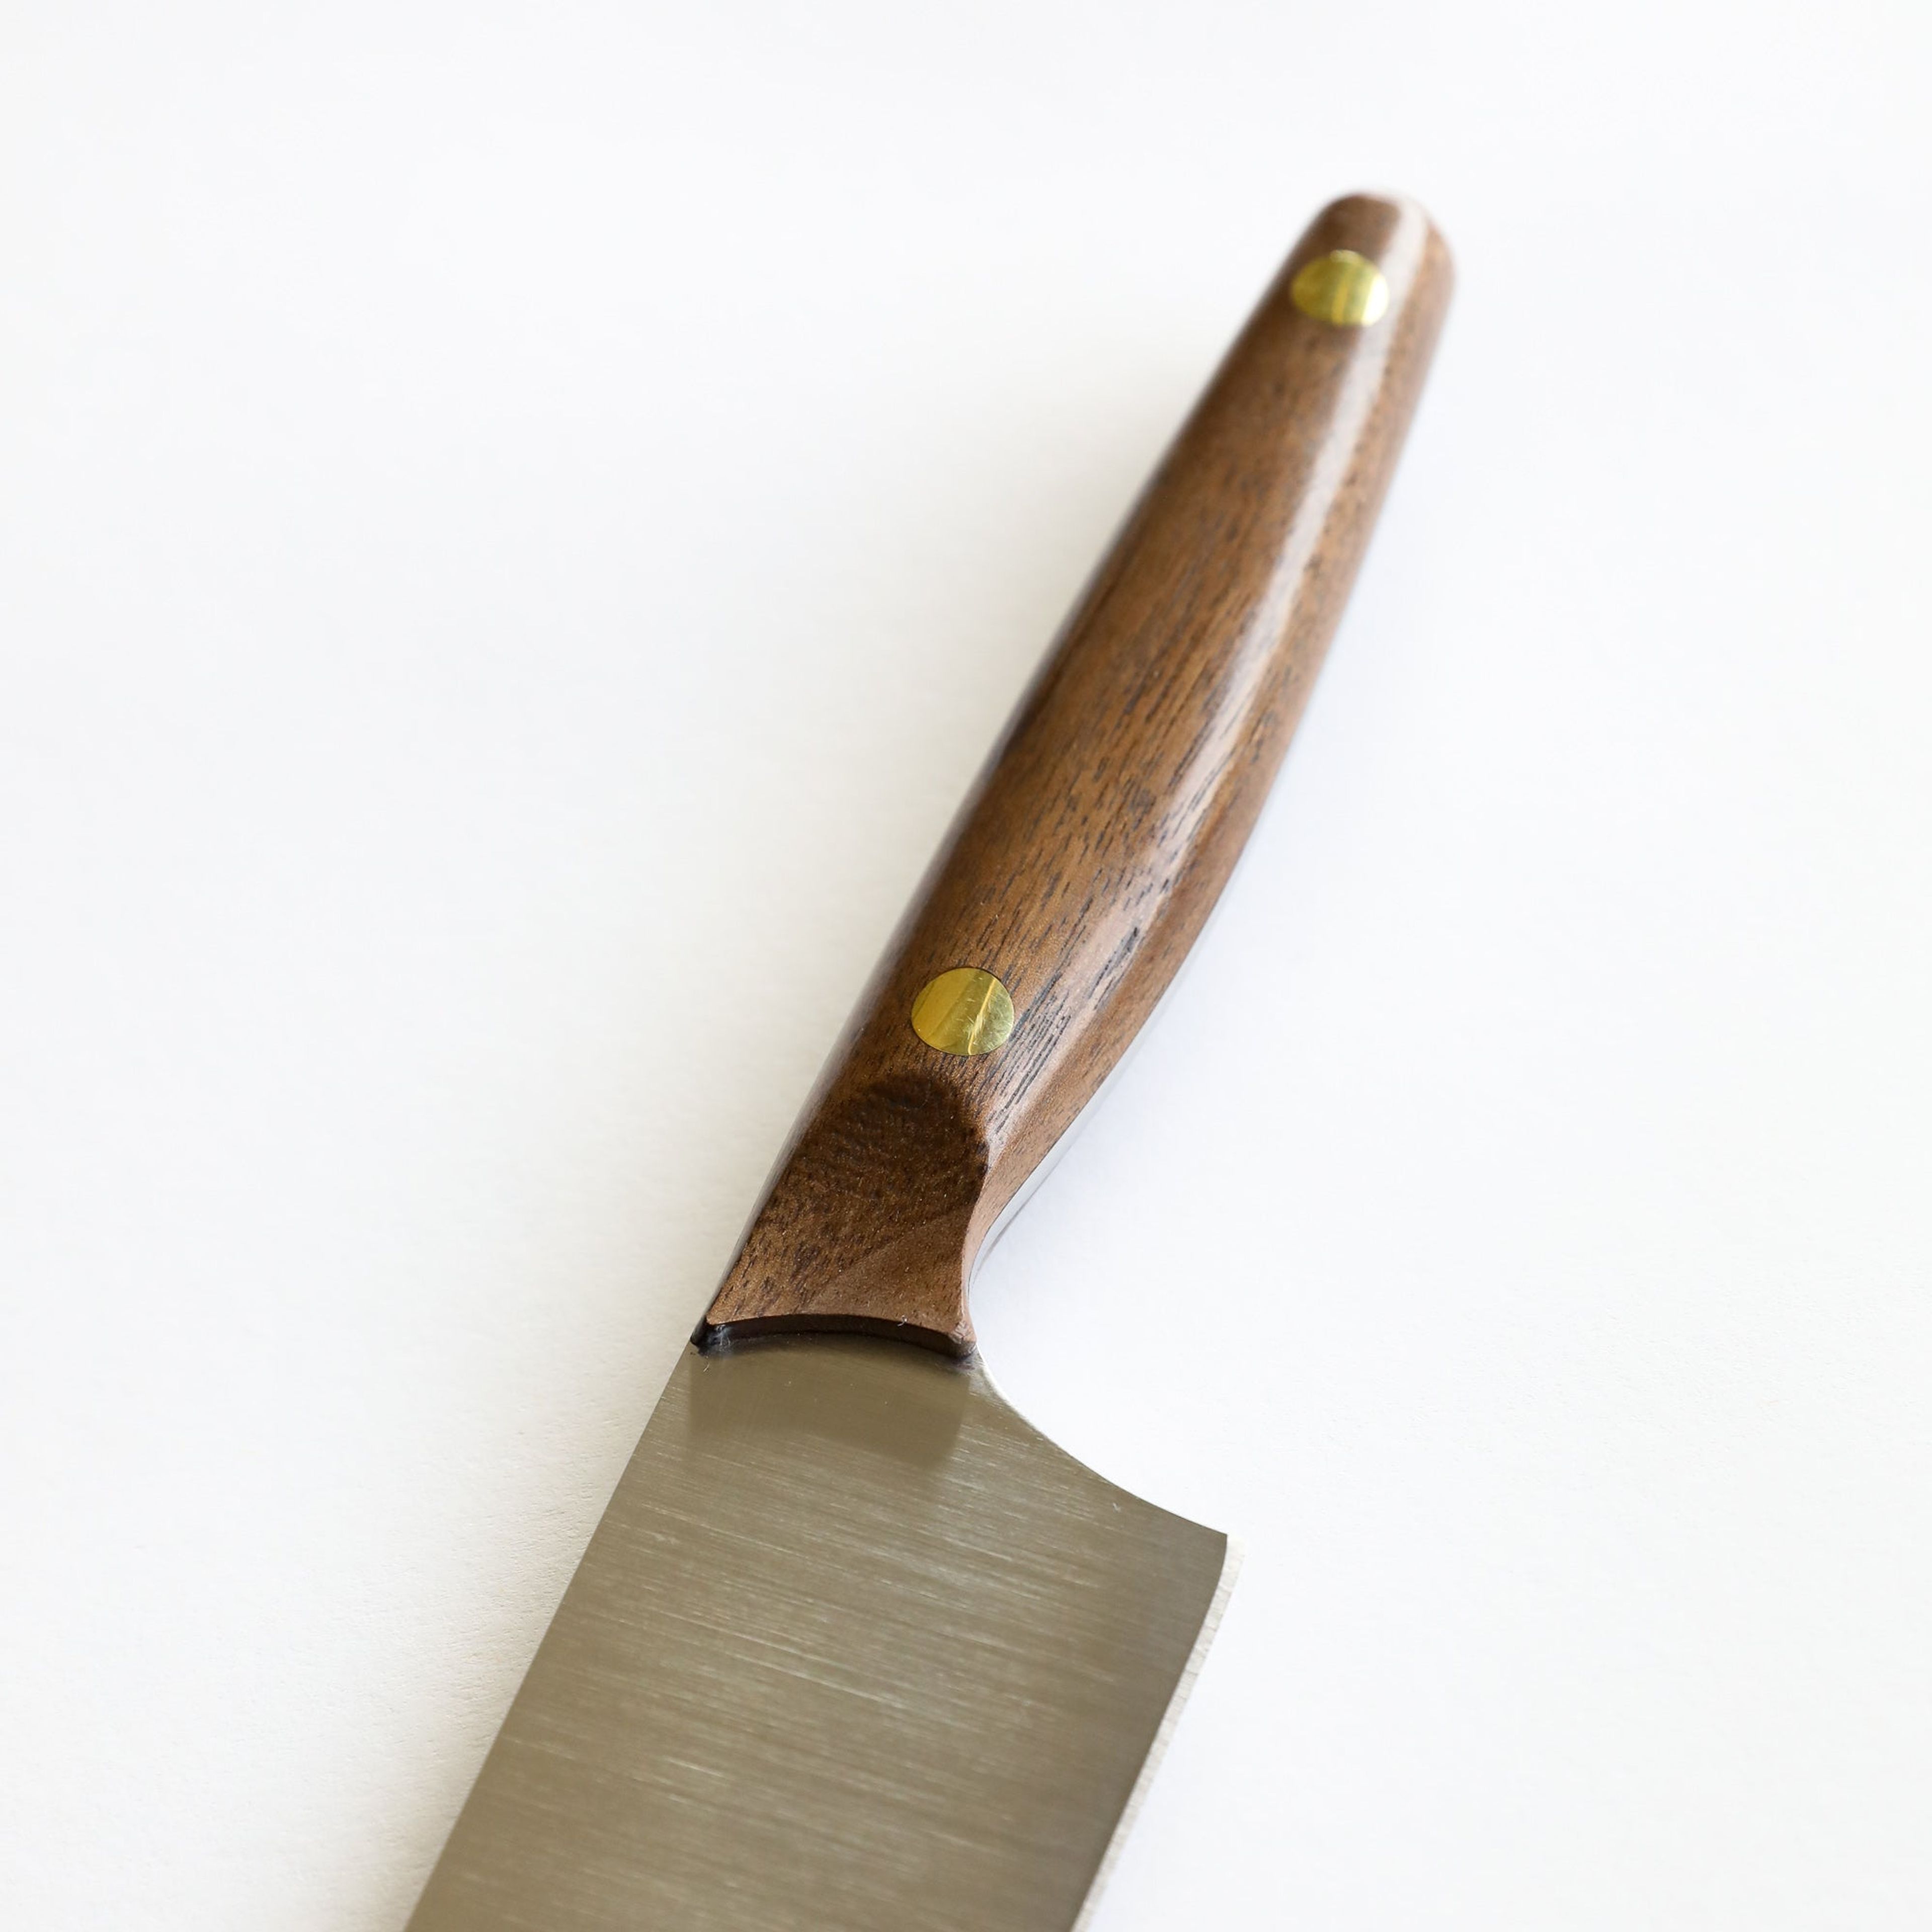 8" Vintage Chef's Knife